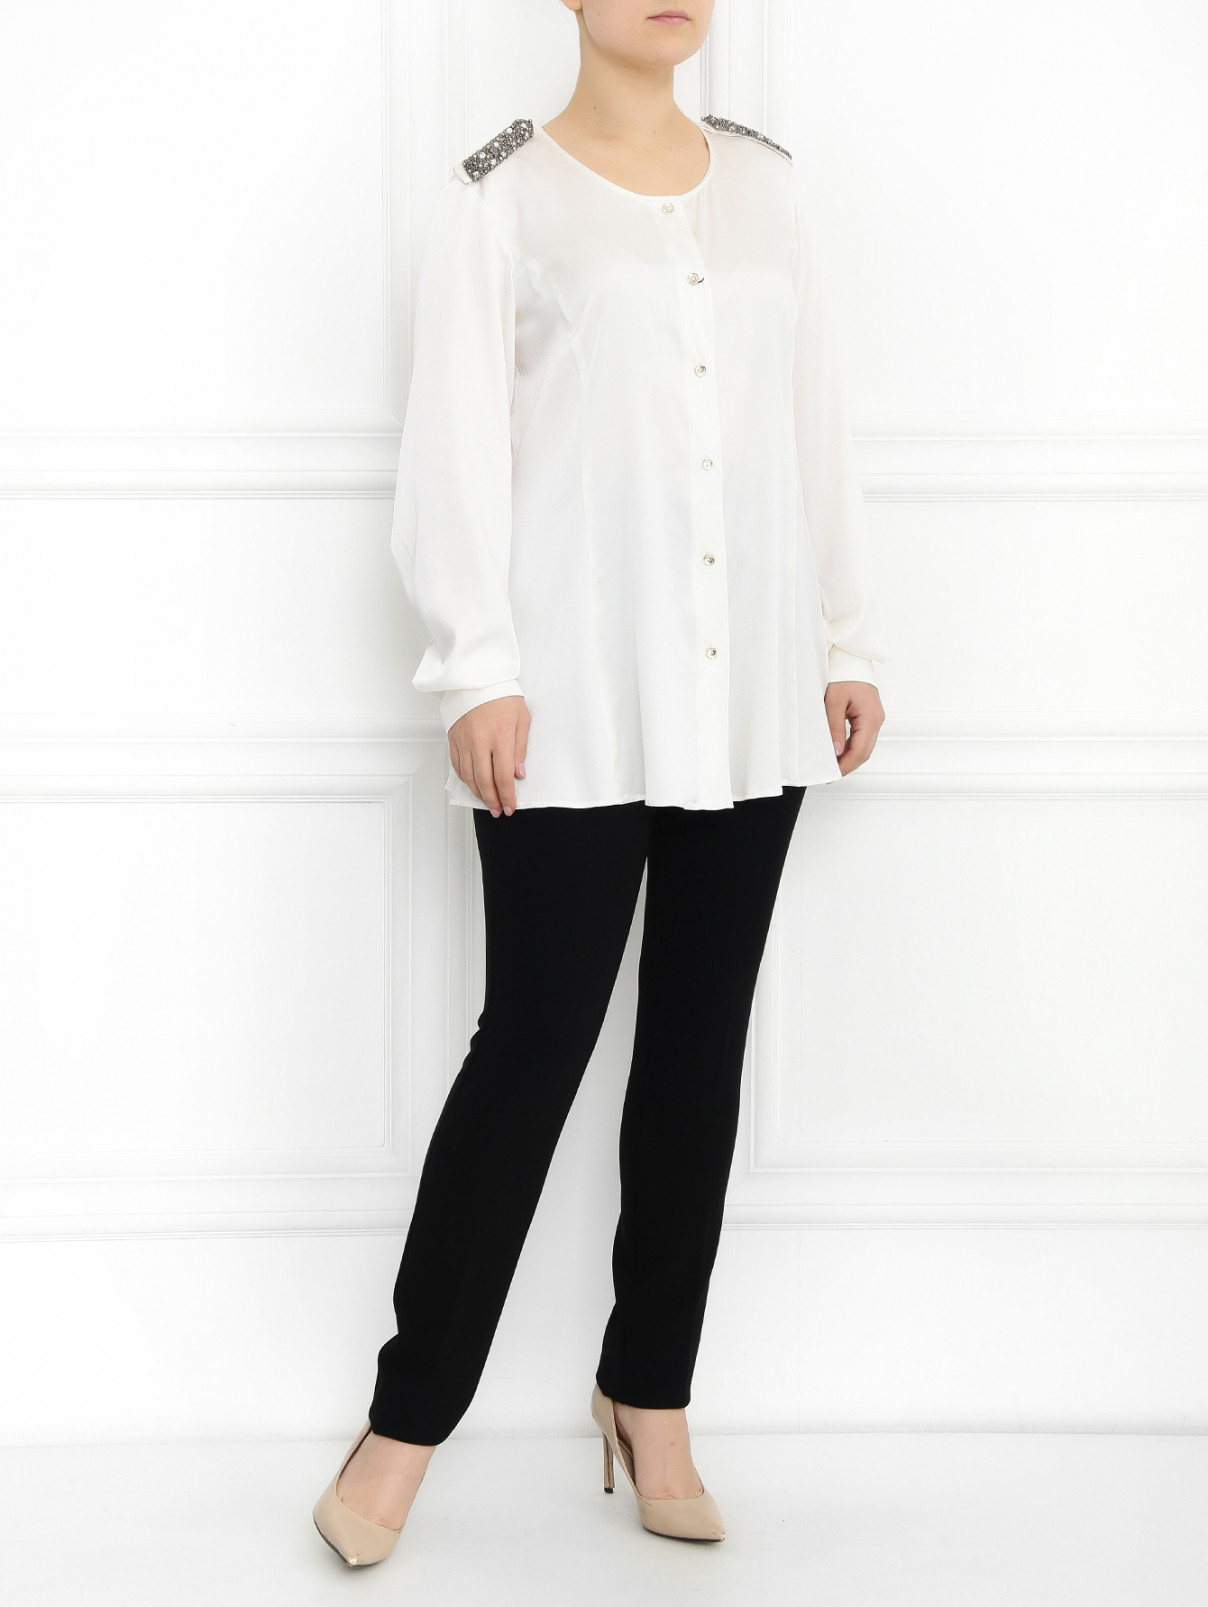 Шелковая блуза декорированная бисером Marina Rinaldi  –  Модель Общий вид  – Цвет:  Белый